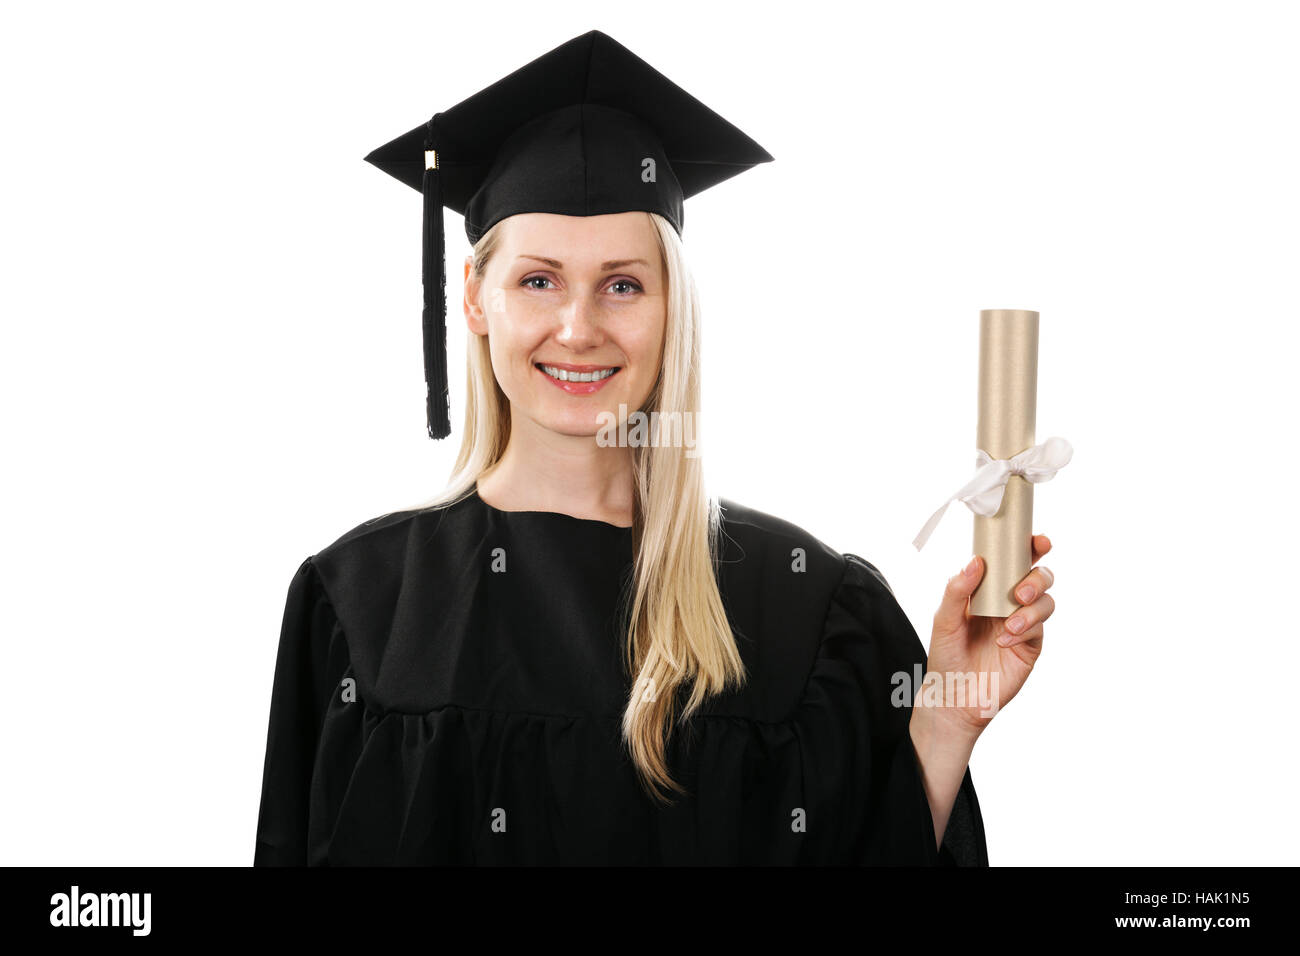 Diploma de postgrado sonriente mostrando aislado en blanco Foto de stock